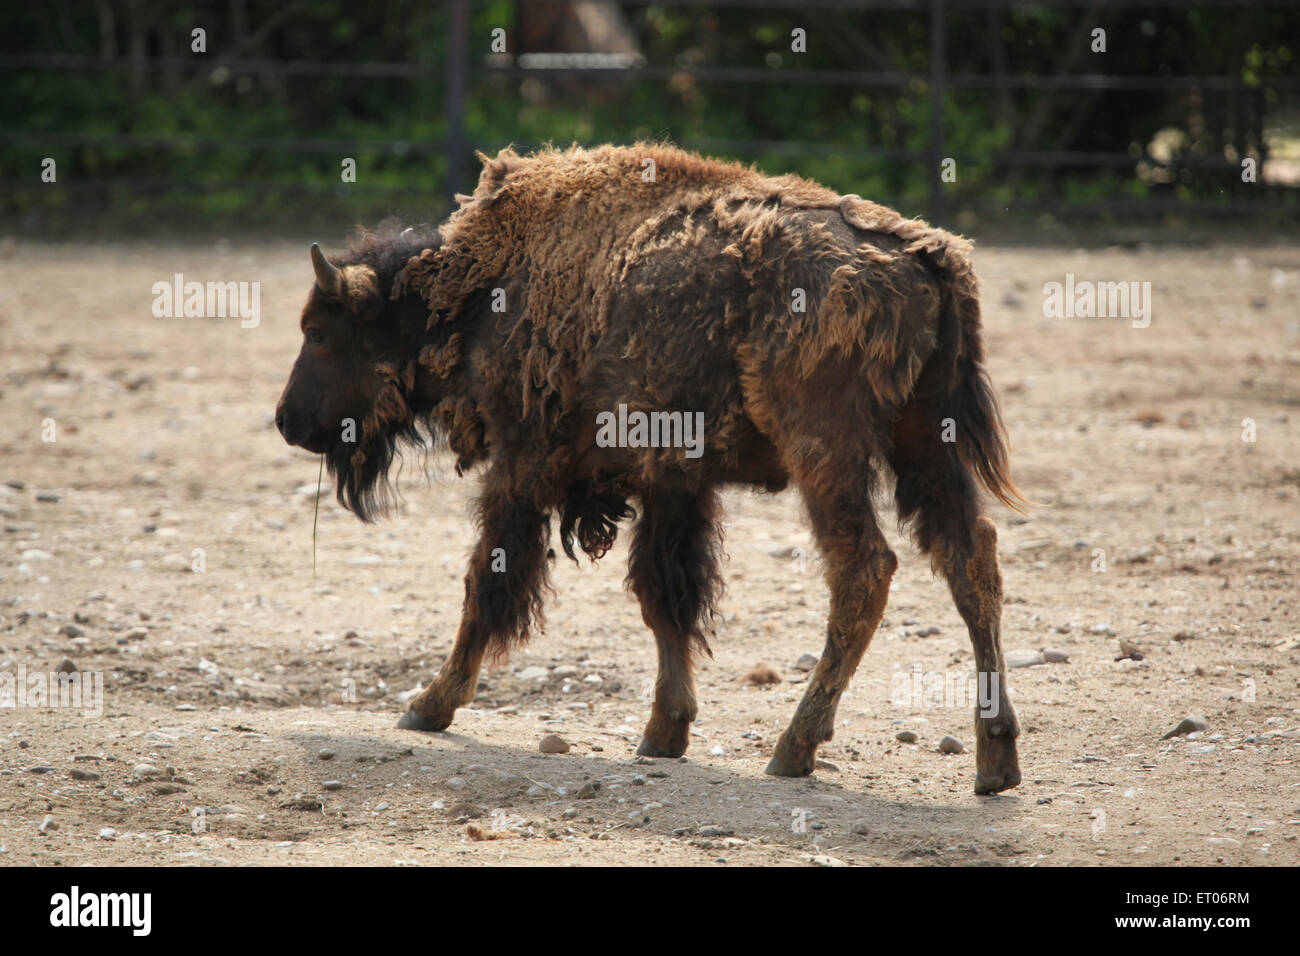 American el bisonte (Bison bison), también conocido como American Buffalo en el parque zoológico de Praga, República Checa. Foto de stock